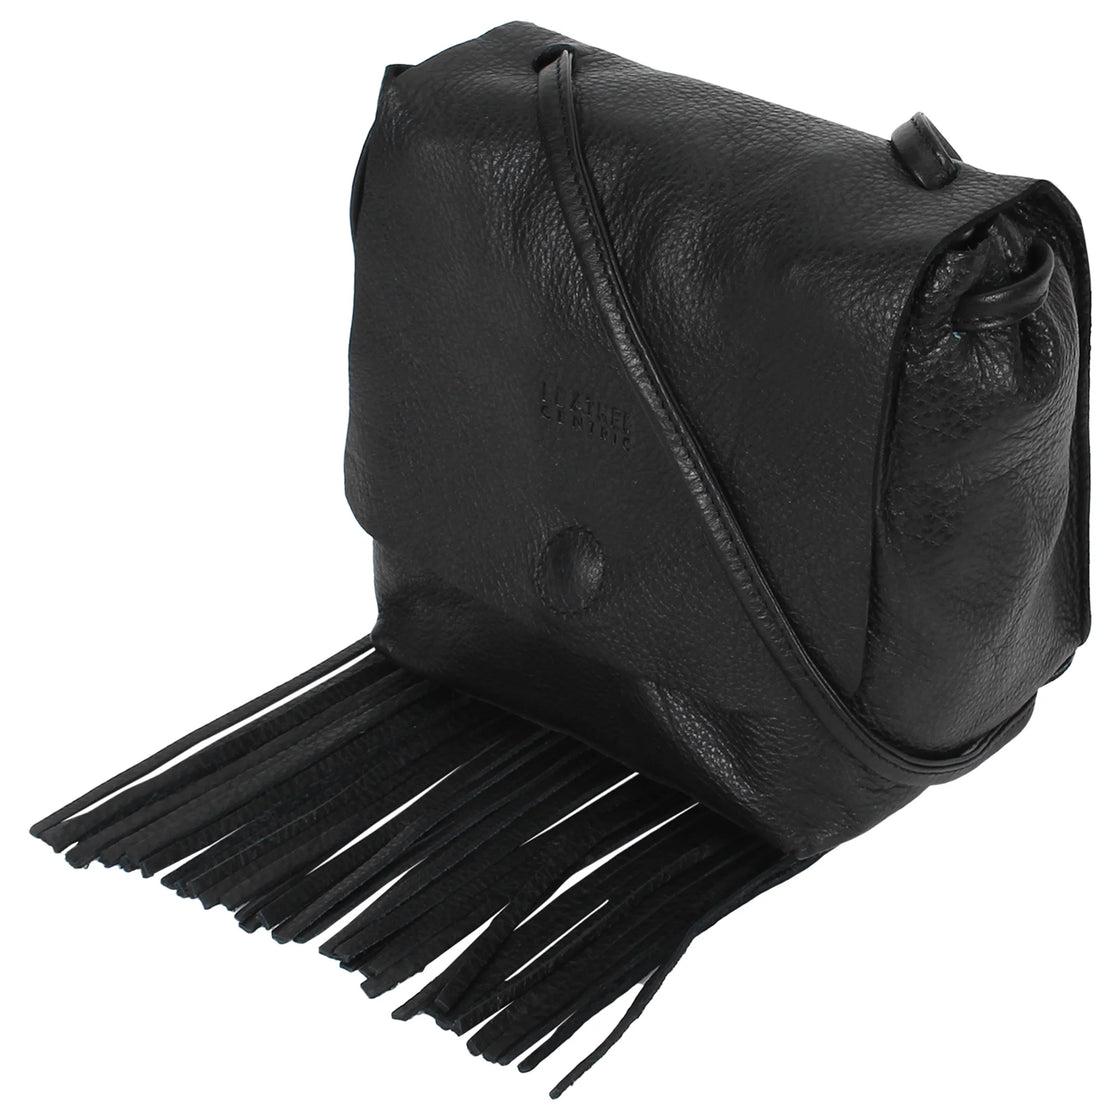 Boho Black Leather Fringe Crossbody Purse -   Leather fringe bag, Fringe  crossbody bag, Black leather fringe bag